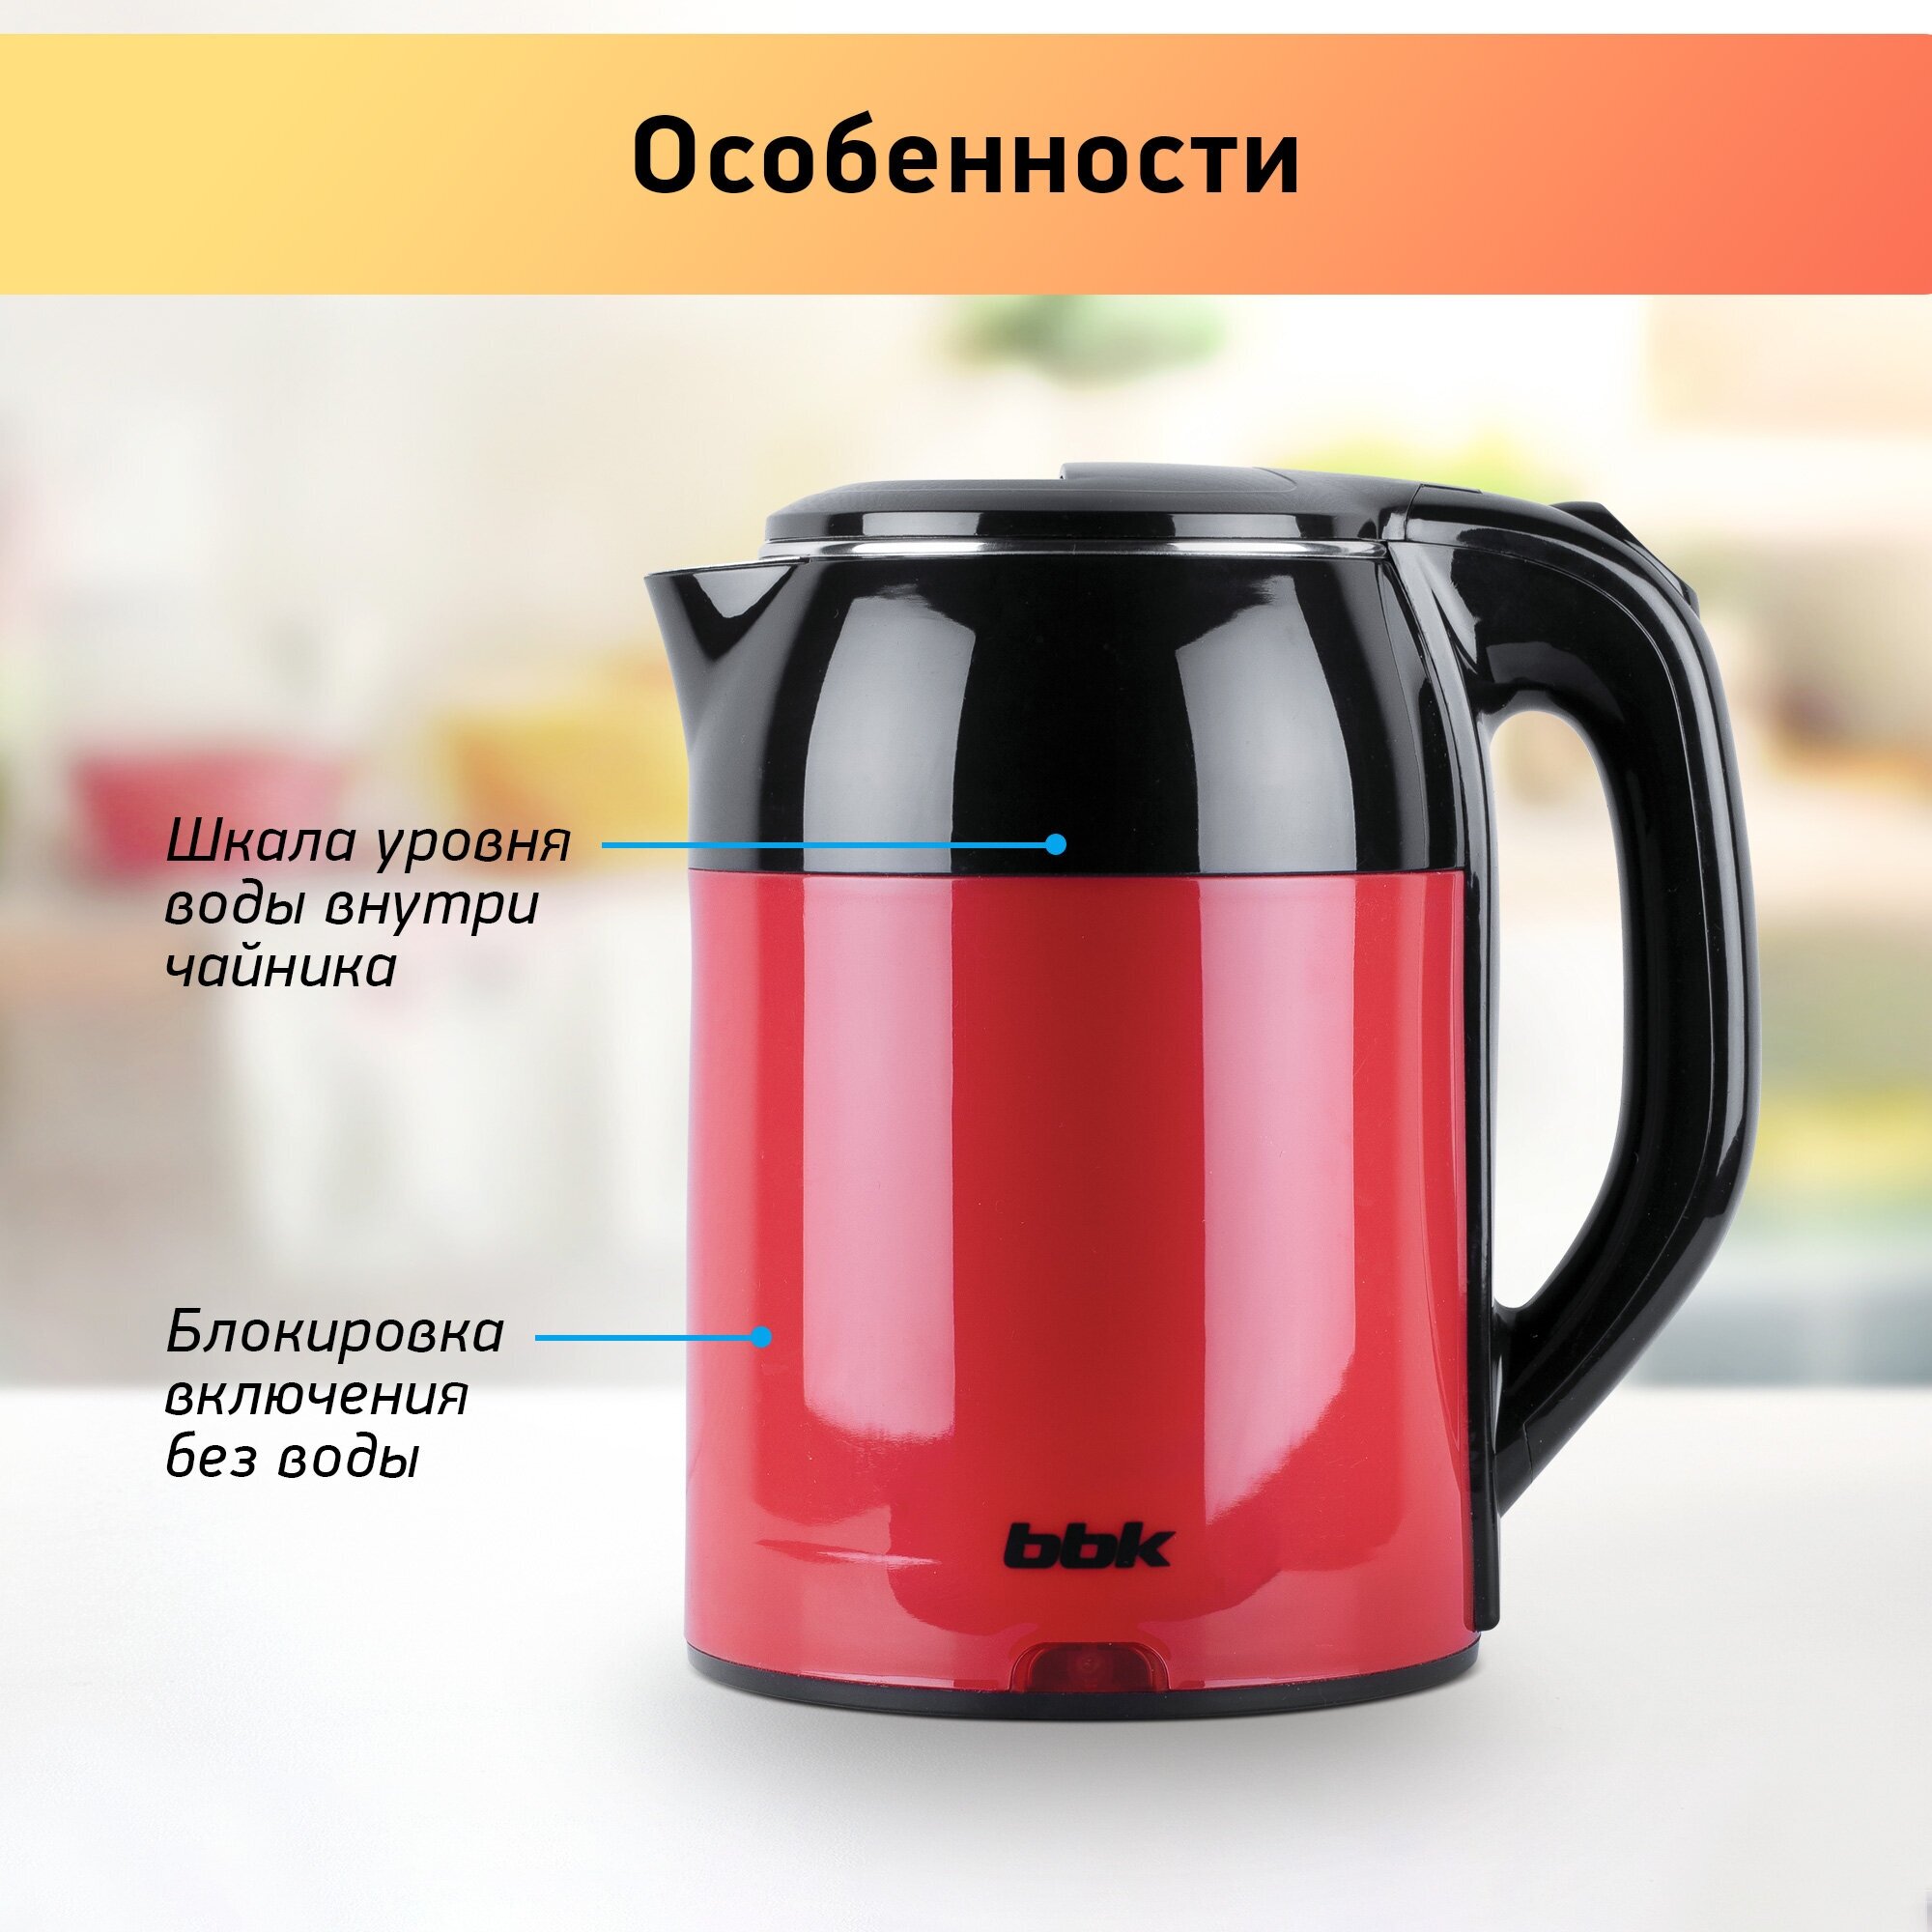 Чайник электрический BBK EK1709P черный/красный